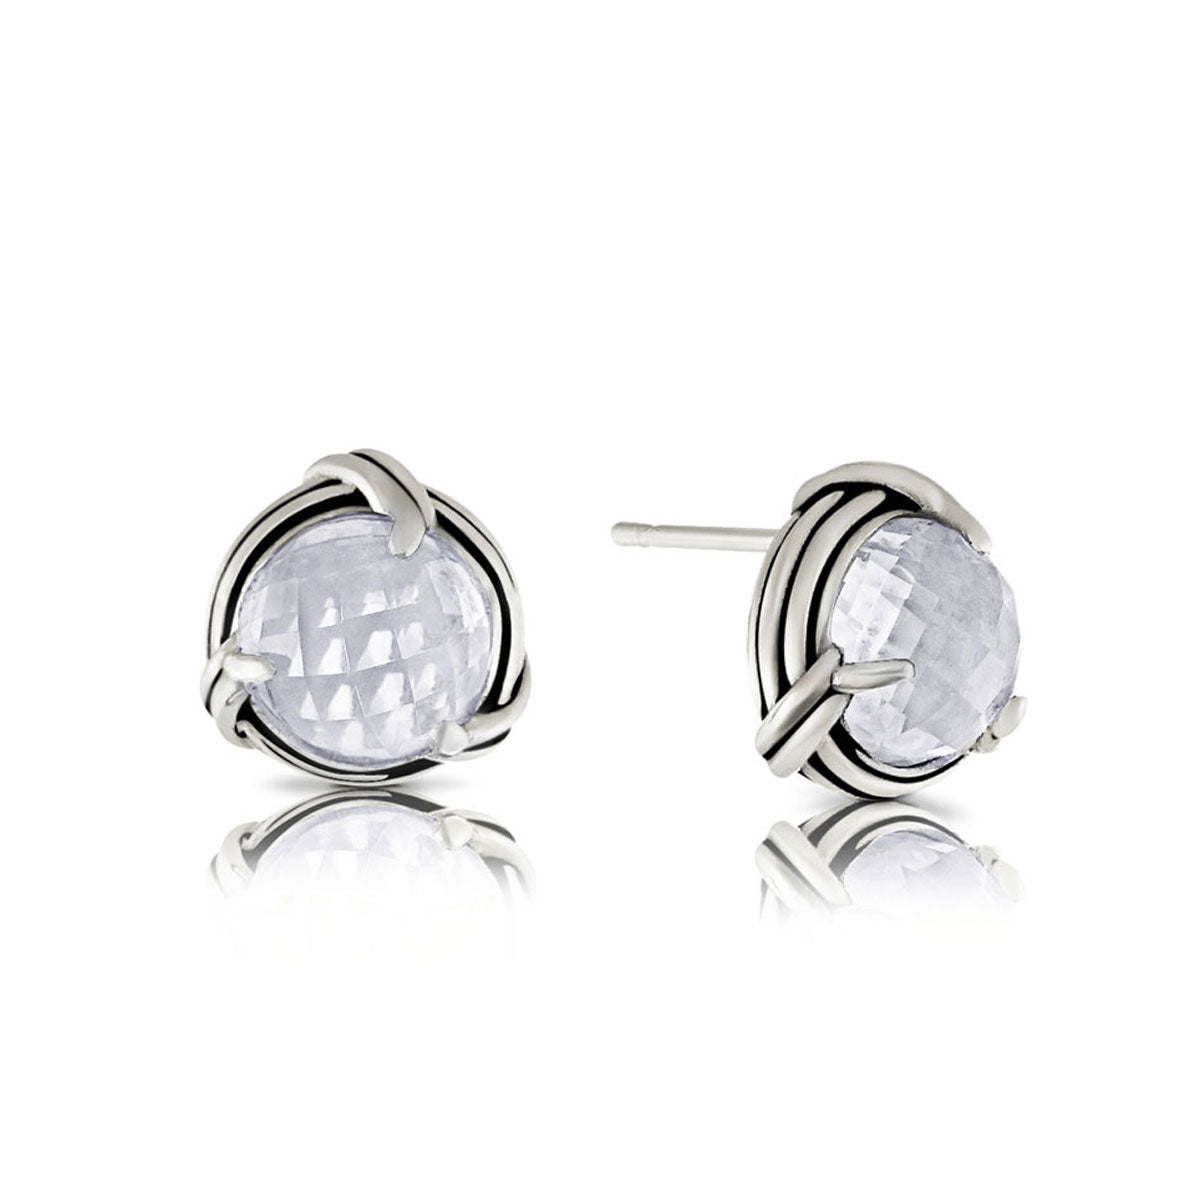 Fantasies Rock Crystal Stud Earrings in sterling silver 8mm